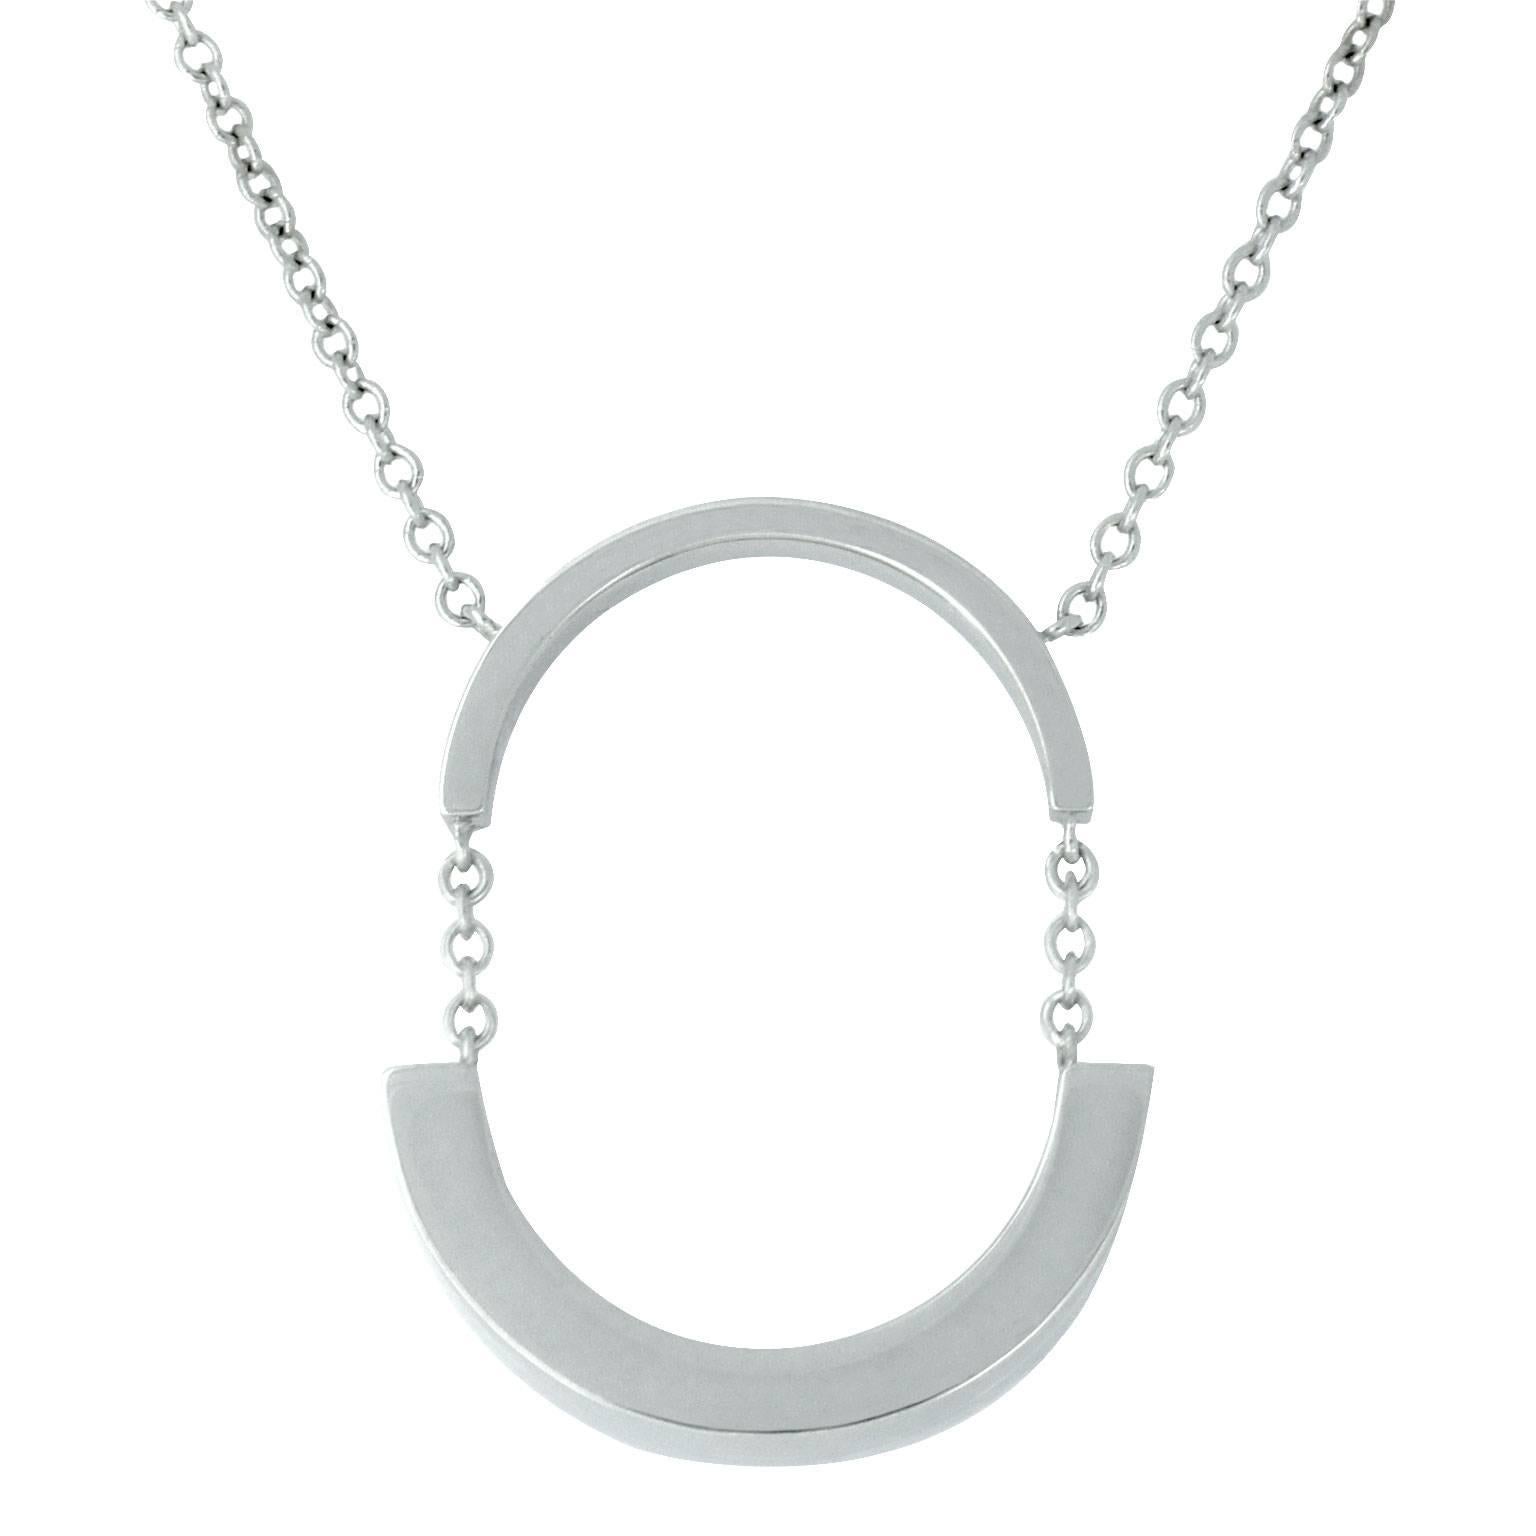 Lizunova Geometric Pendant Necklace in White Gold For Sale